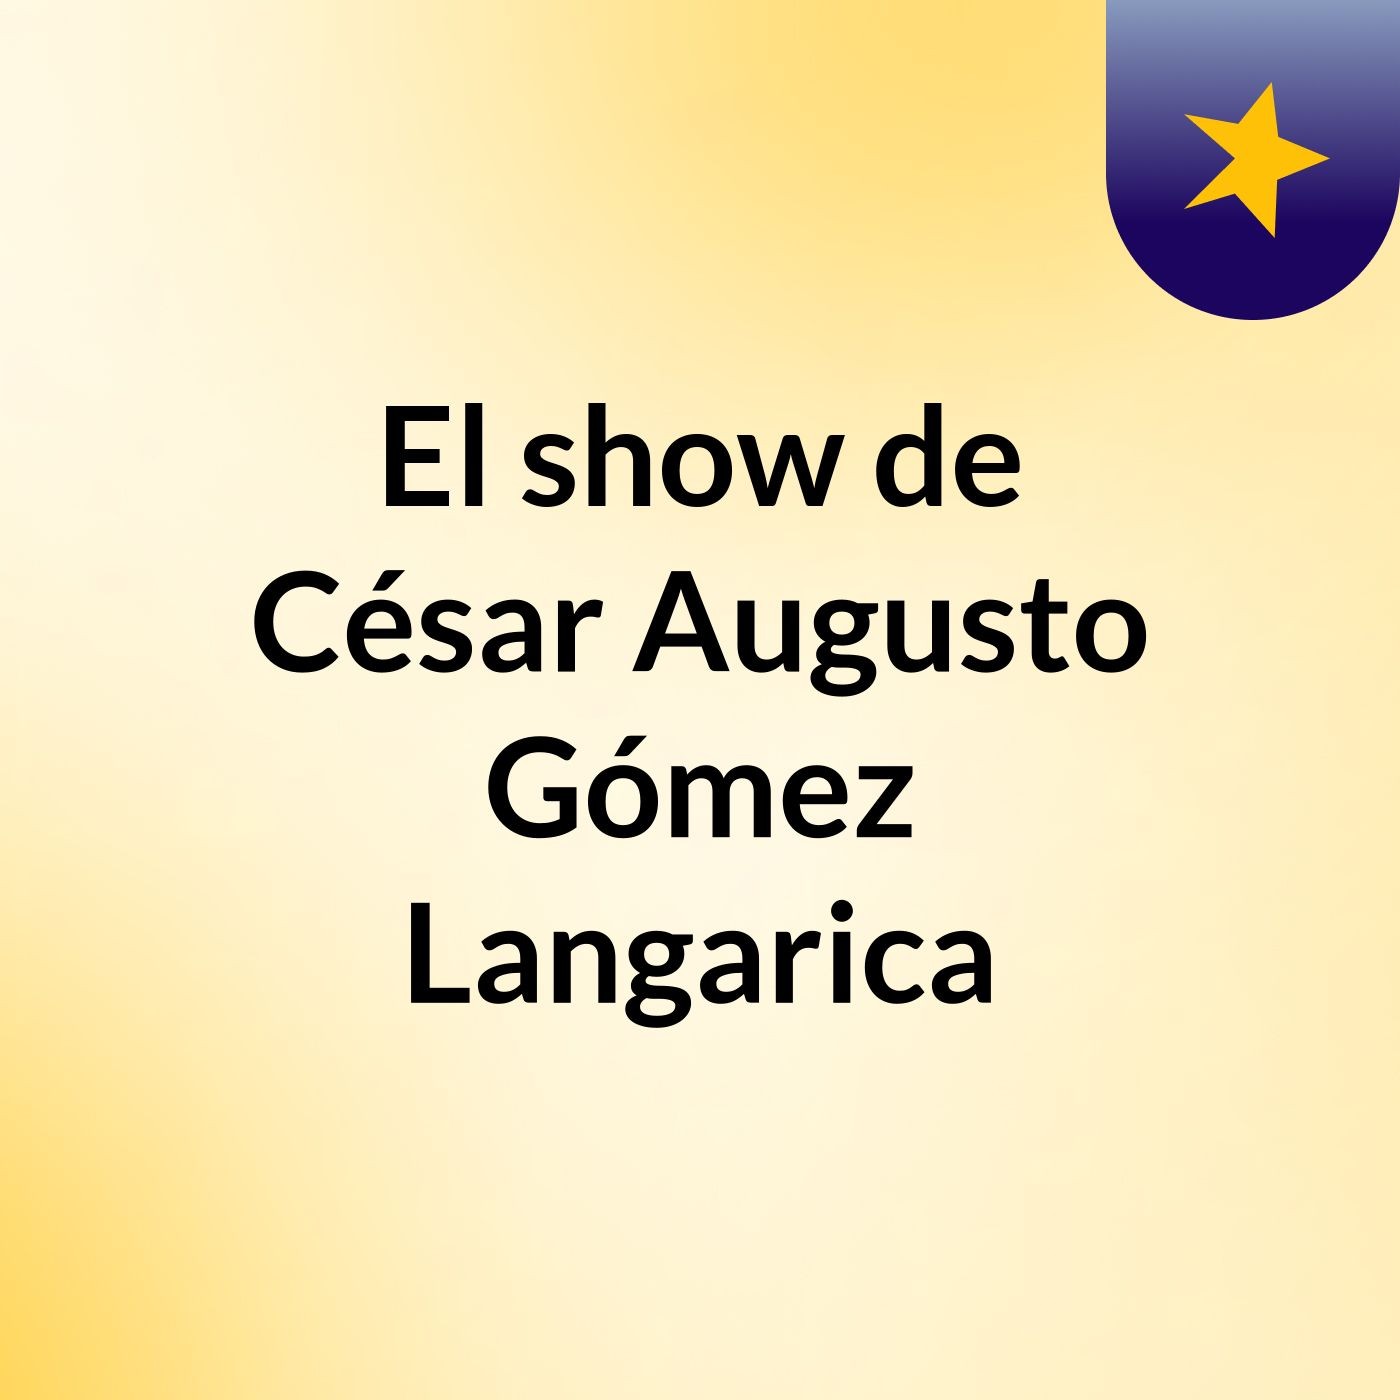 El show de César Augusto Gómez Langarica